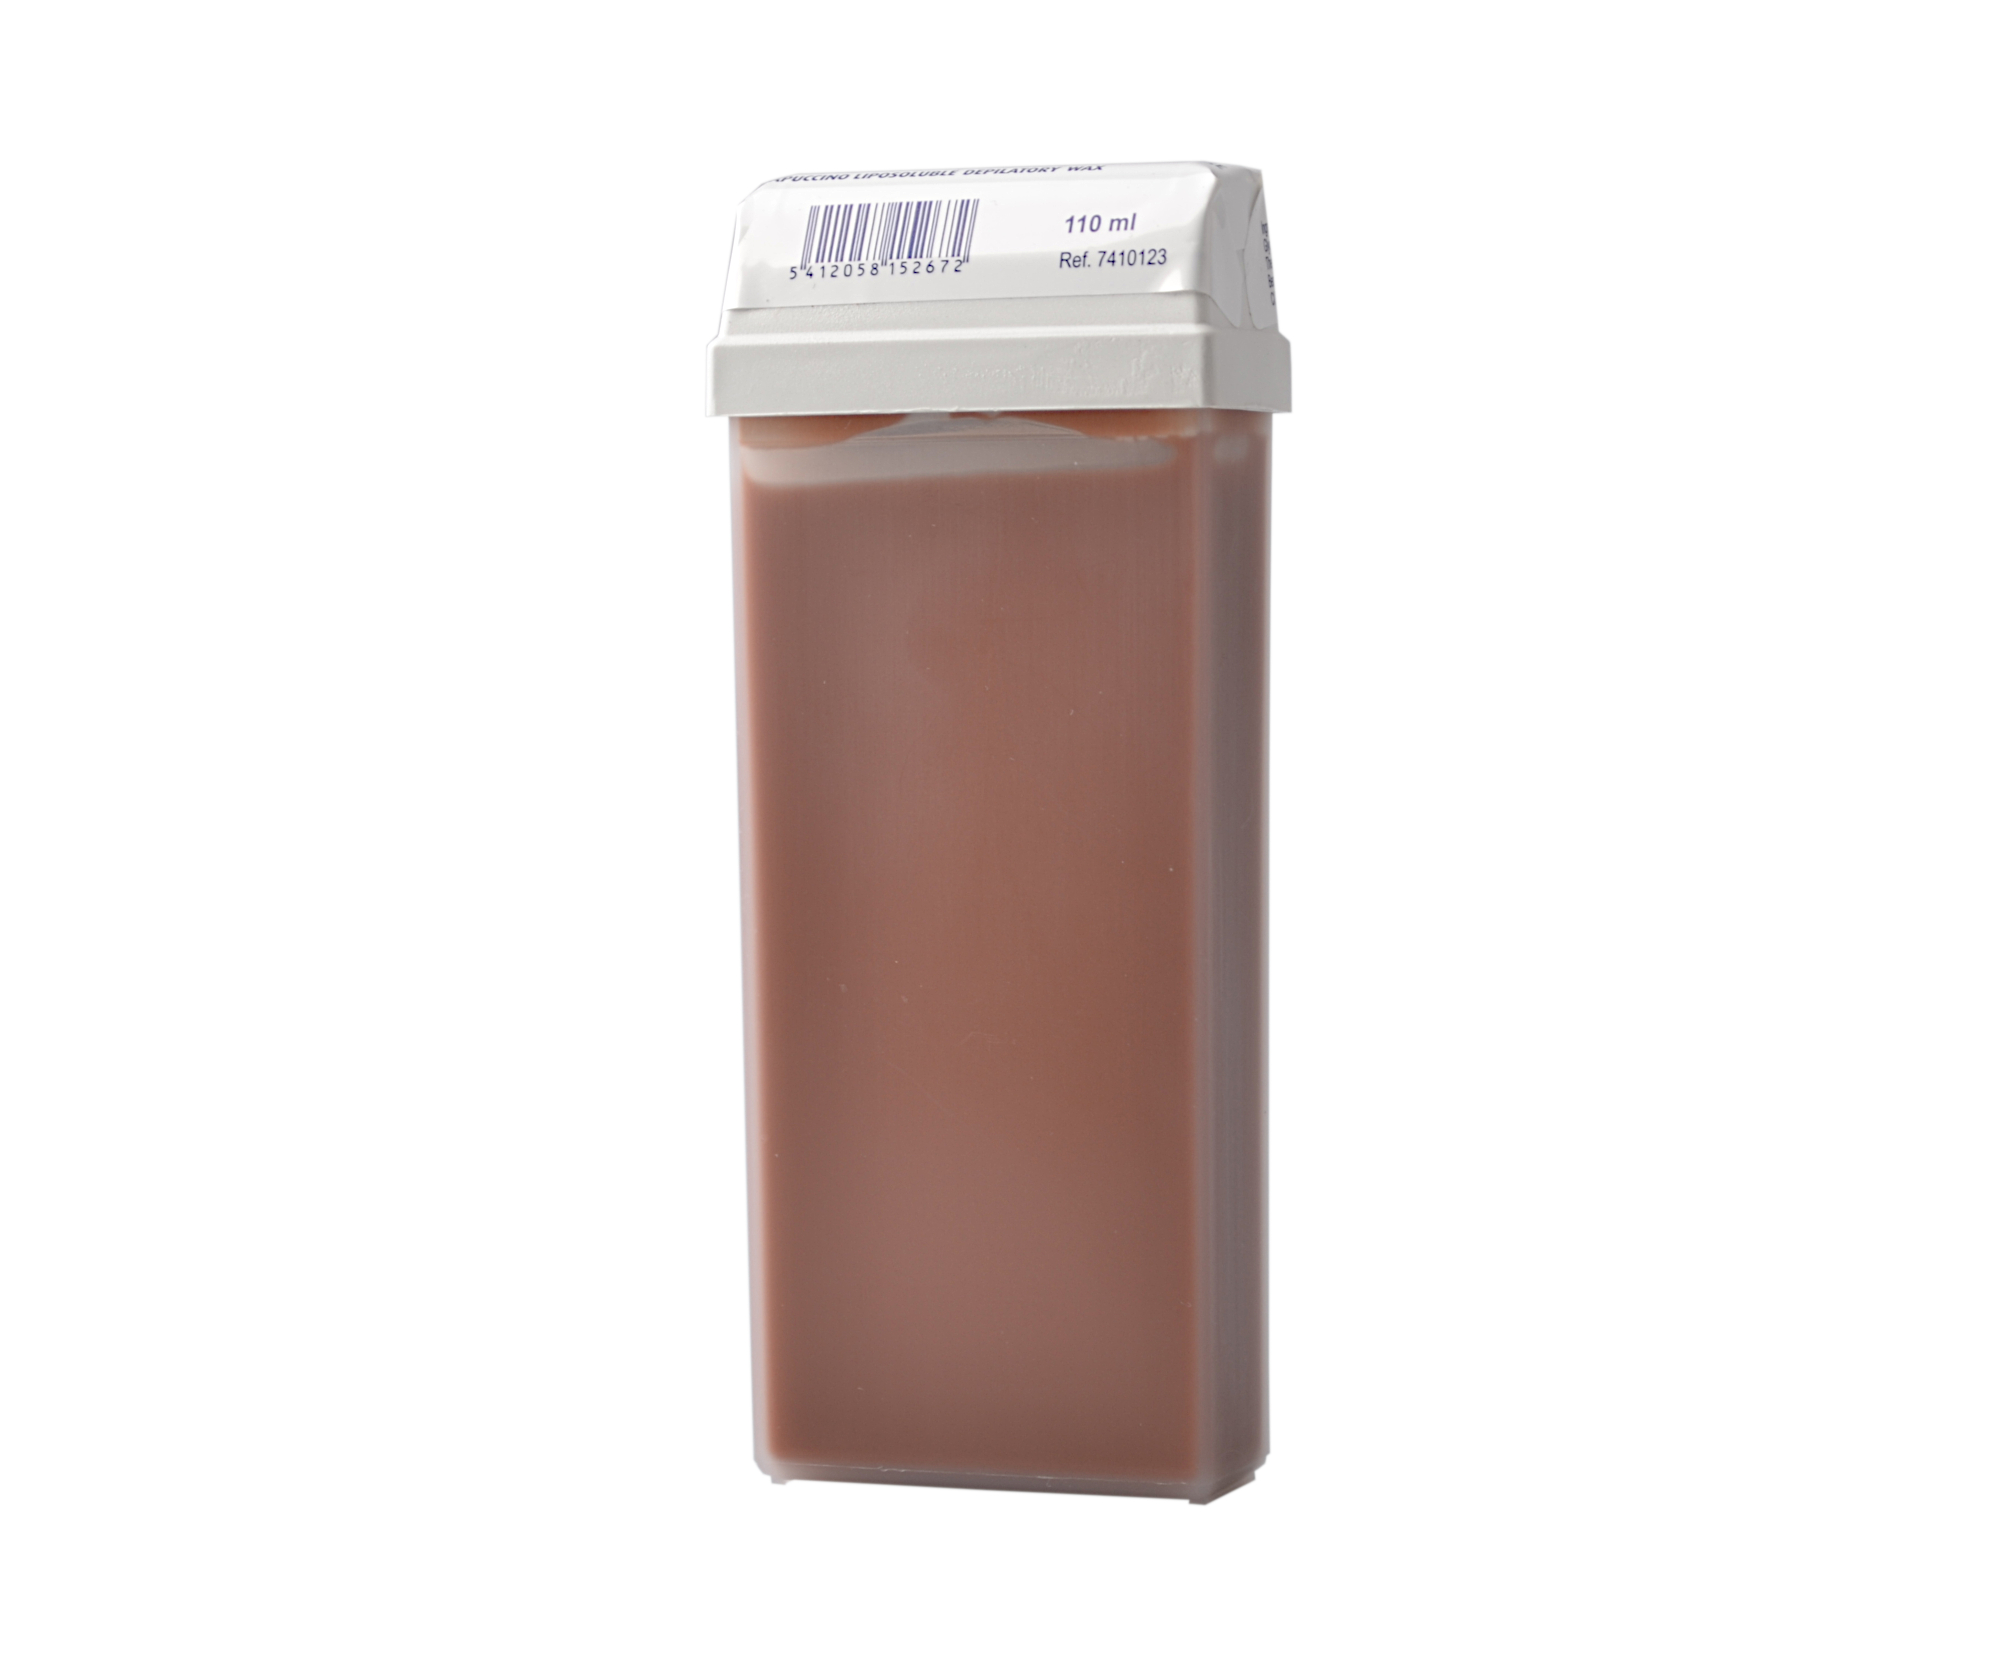 Depilační přírodní vosk Sibel Cappuccino - světle hnědý, 110 ml (7410123)